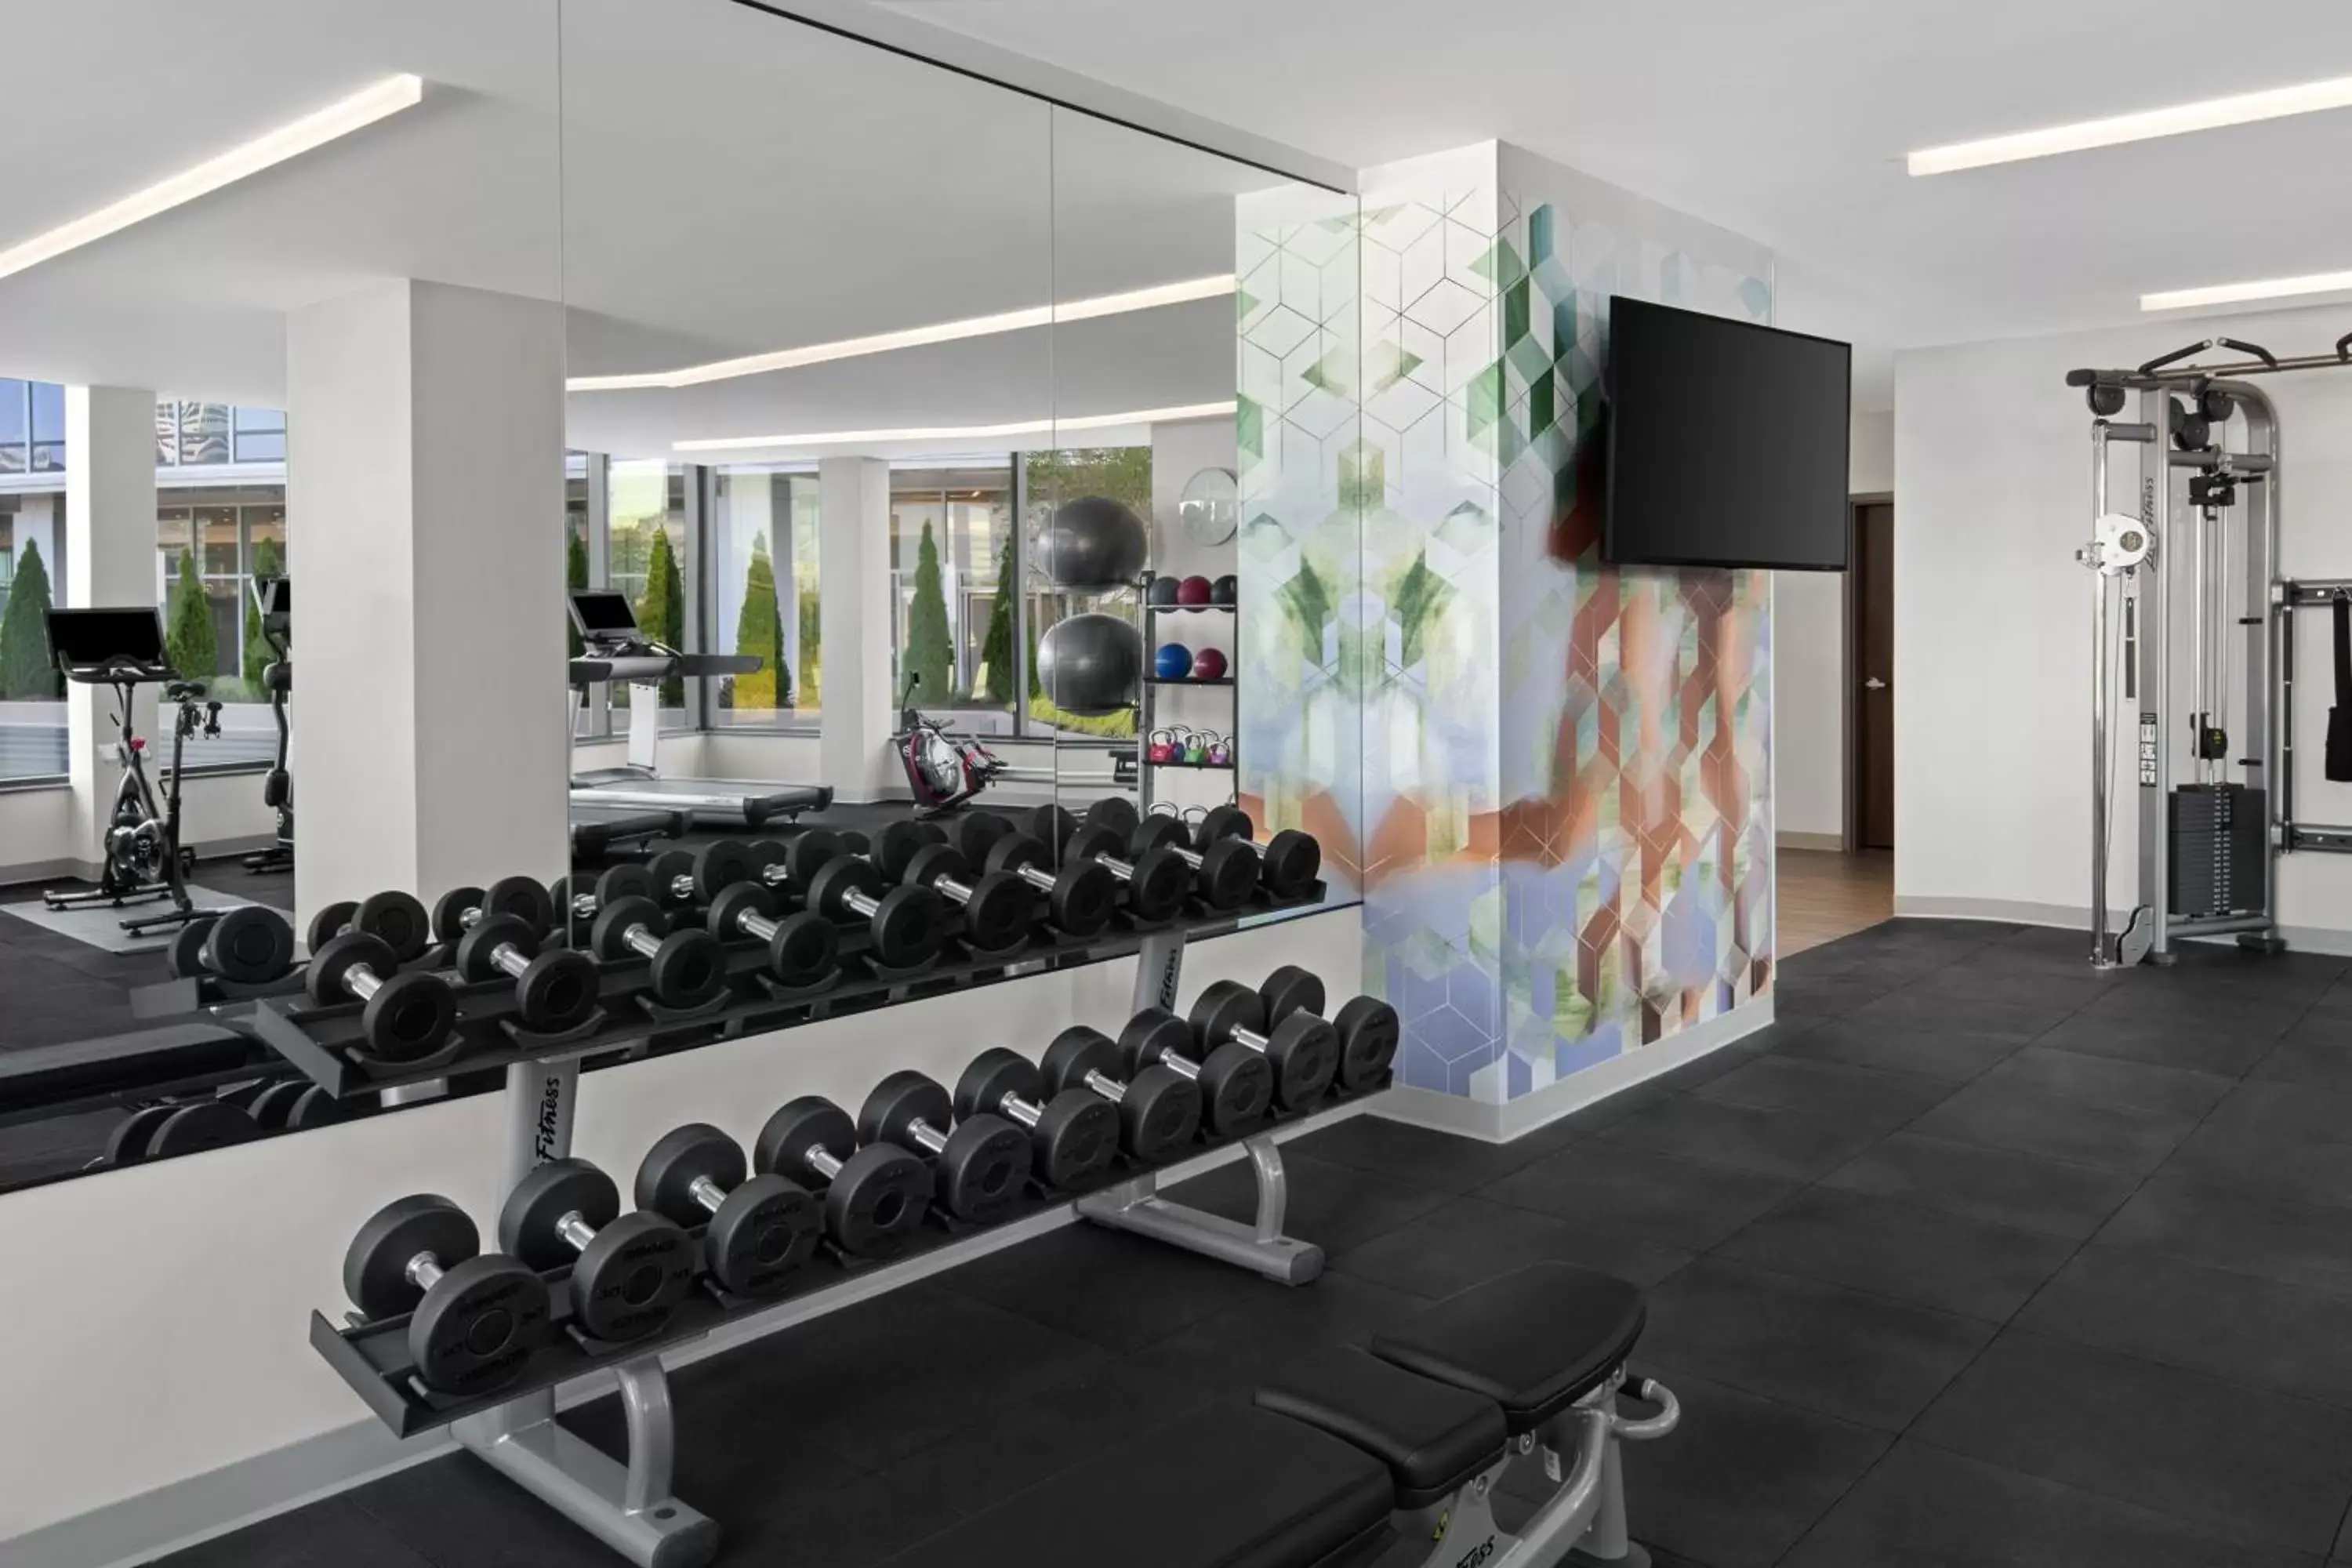 Fitness centre/facilities, Fitness Center/Facilities in Hyatt Place Atlanta/Perimeter Center